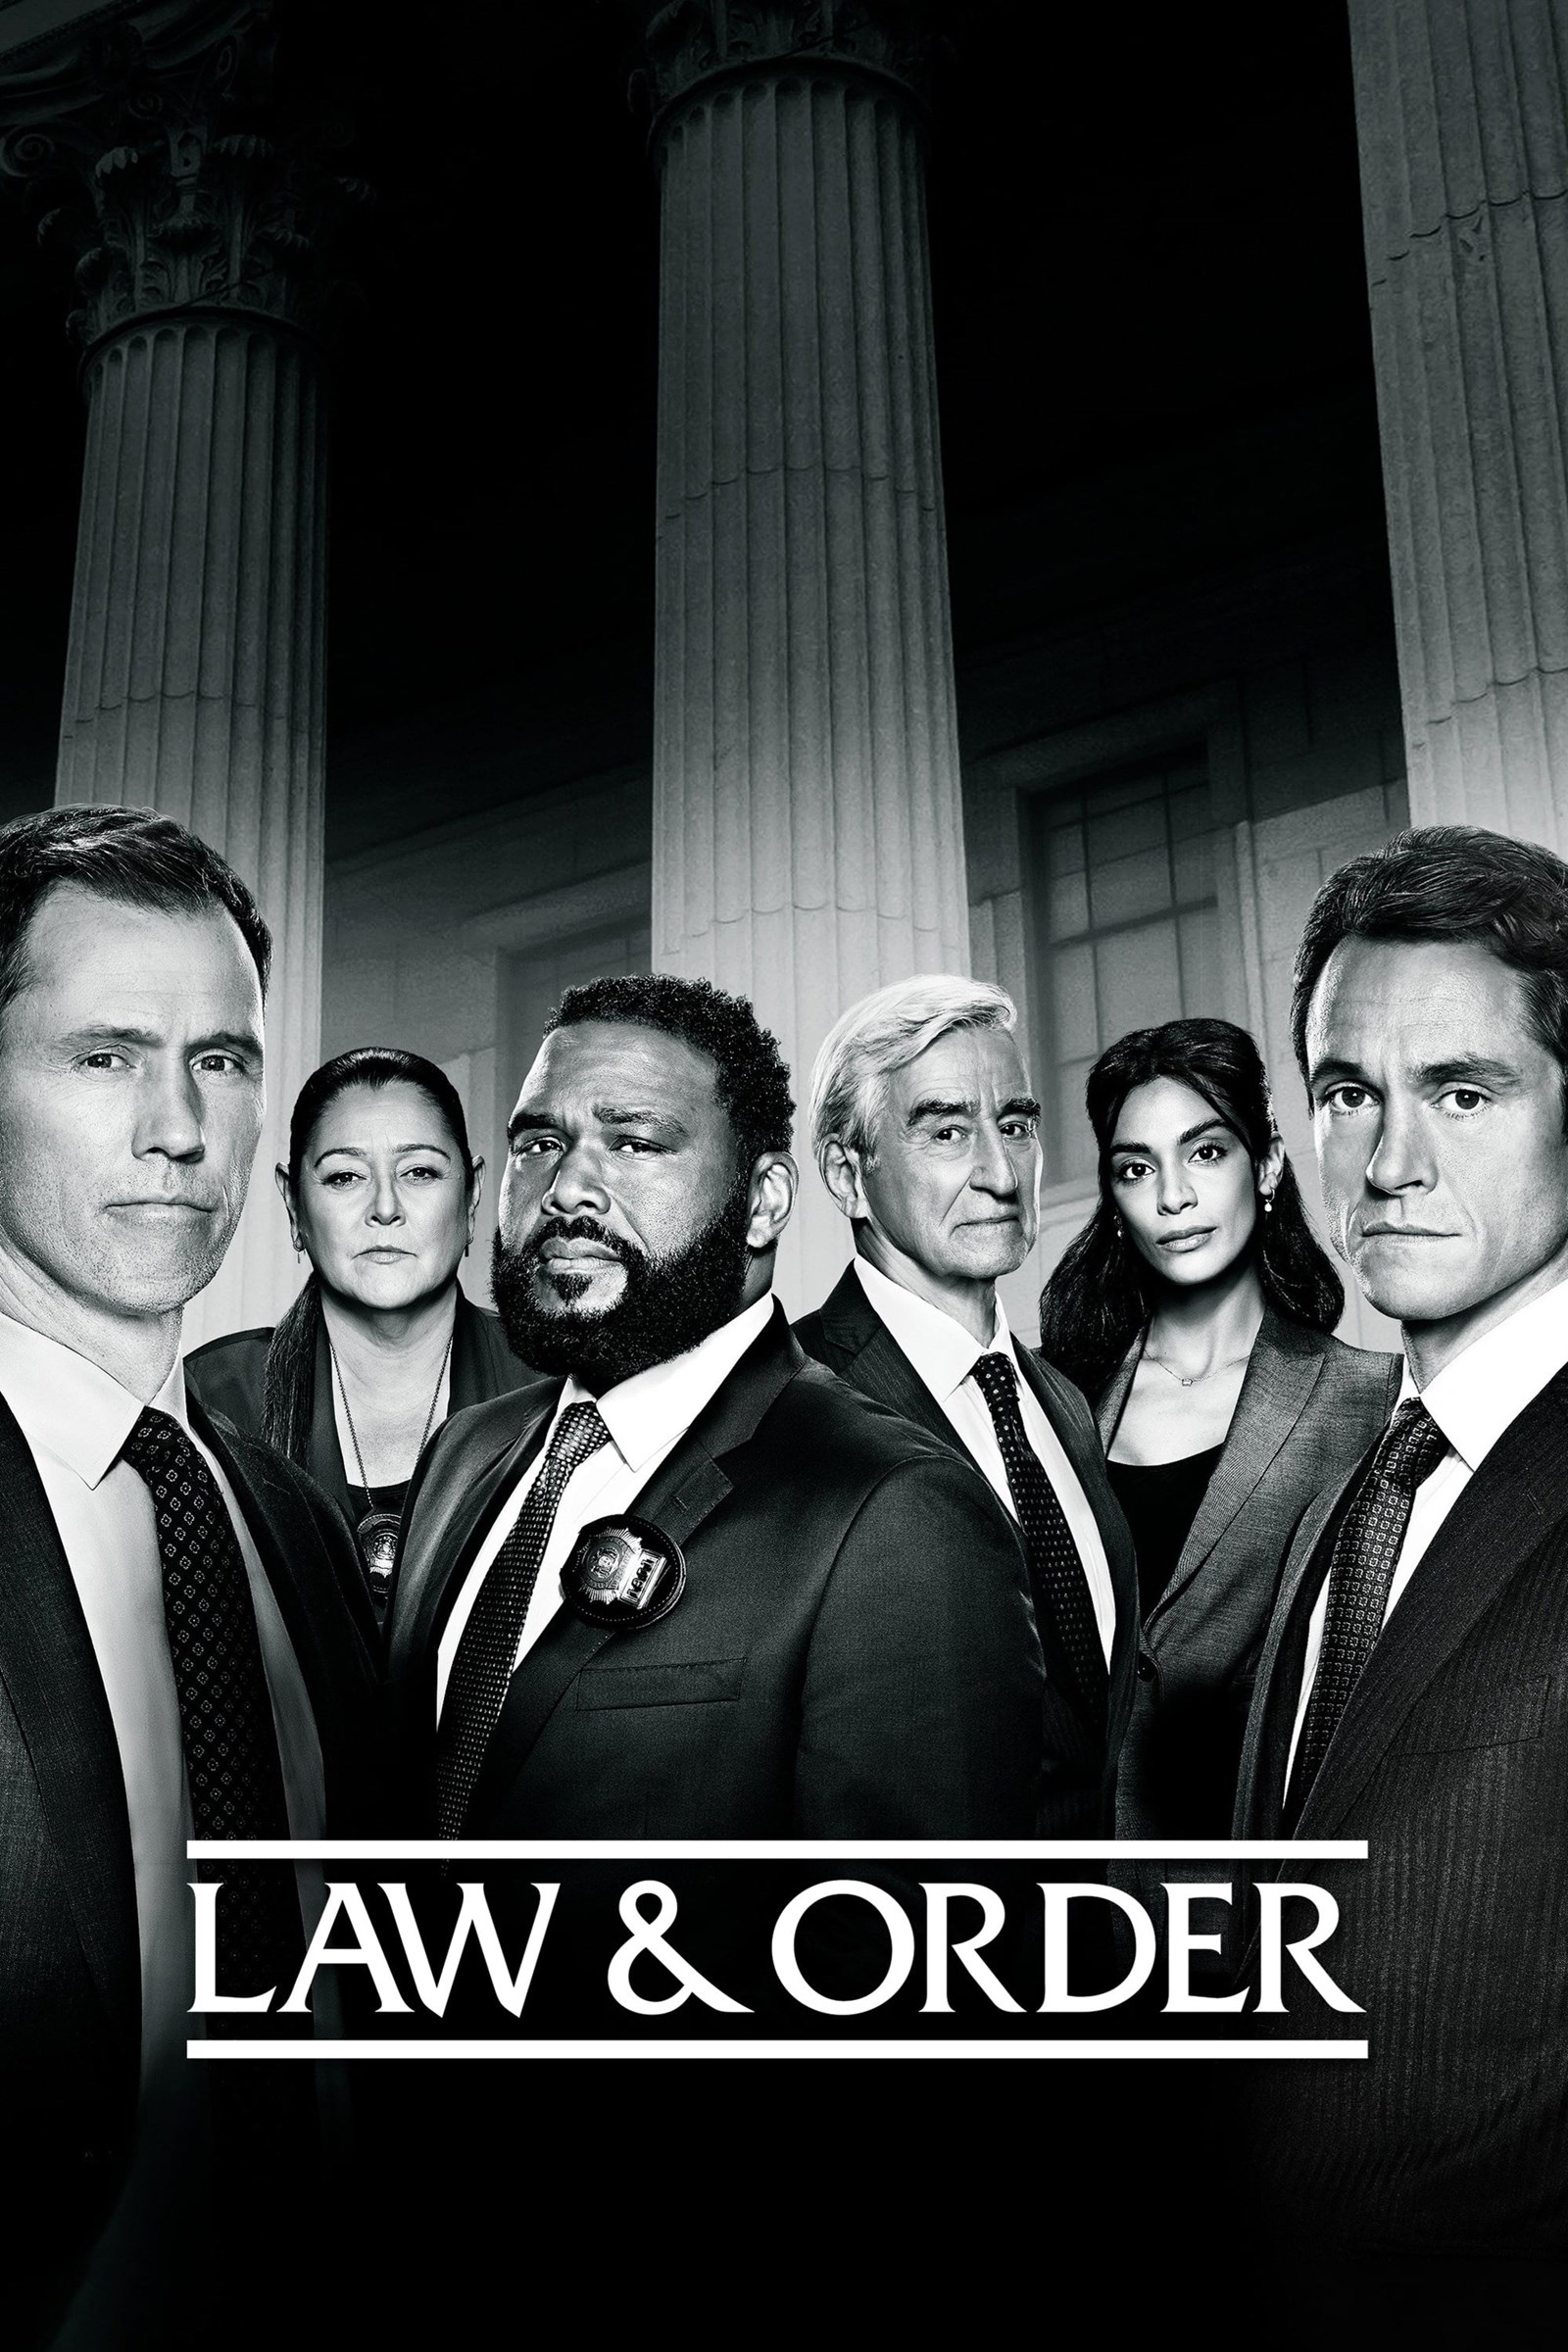 مشاهدة مسلسل Law & Order الموسم 21 الحادي والعشرون الحلقة 6 السادسة مترجمة